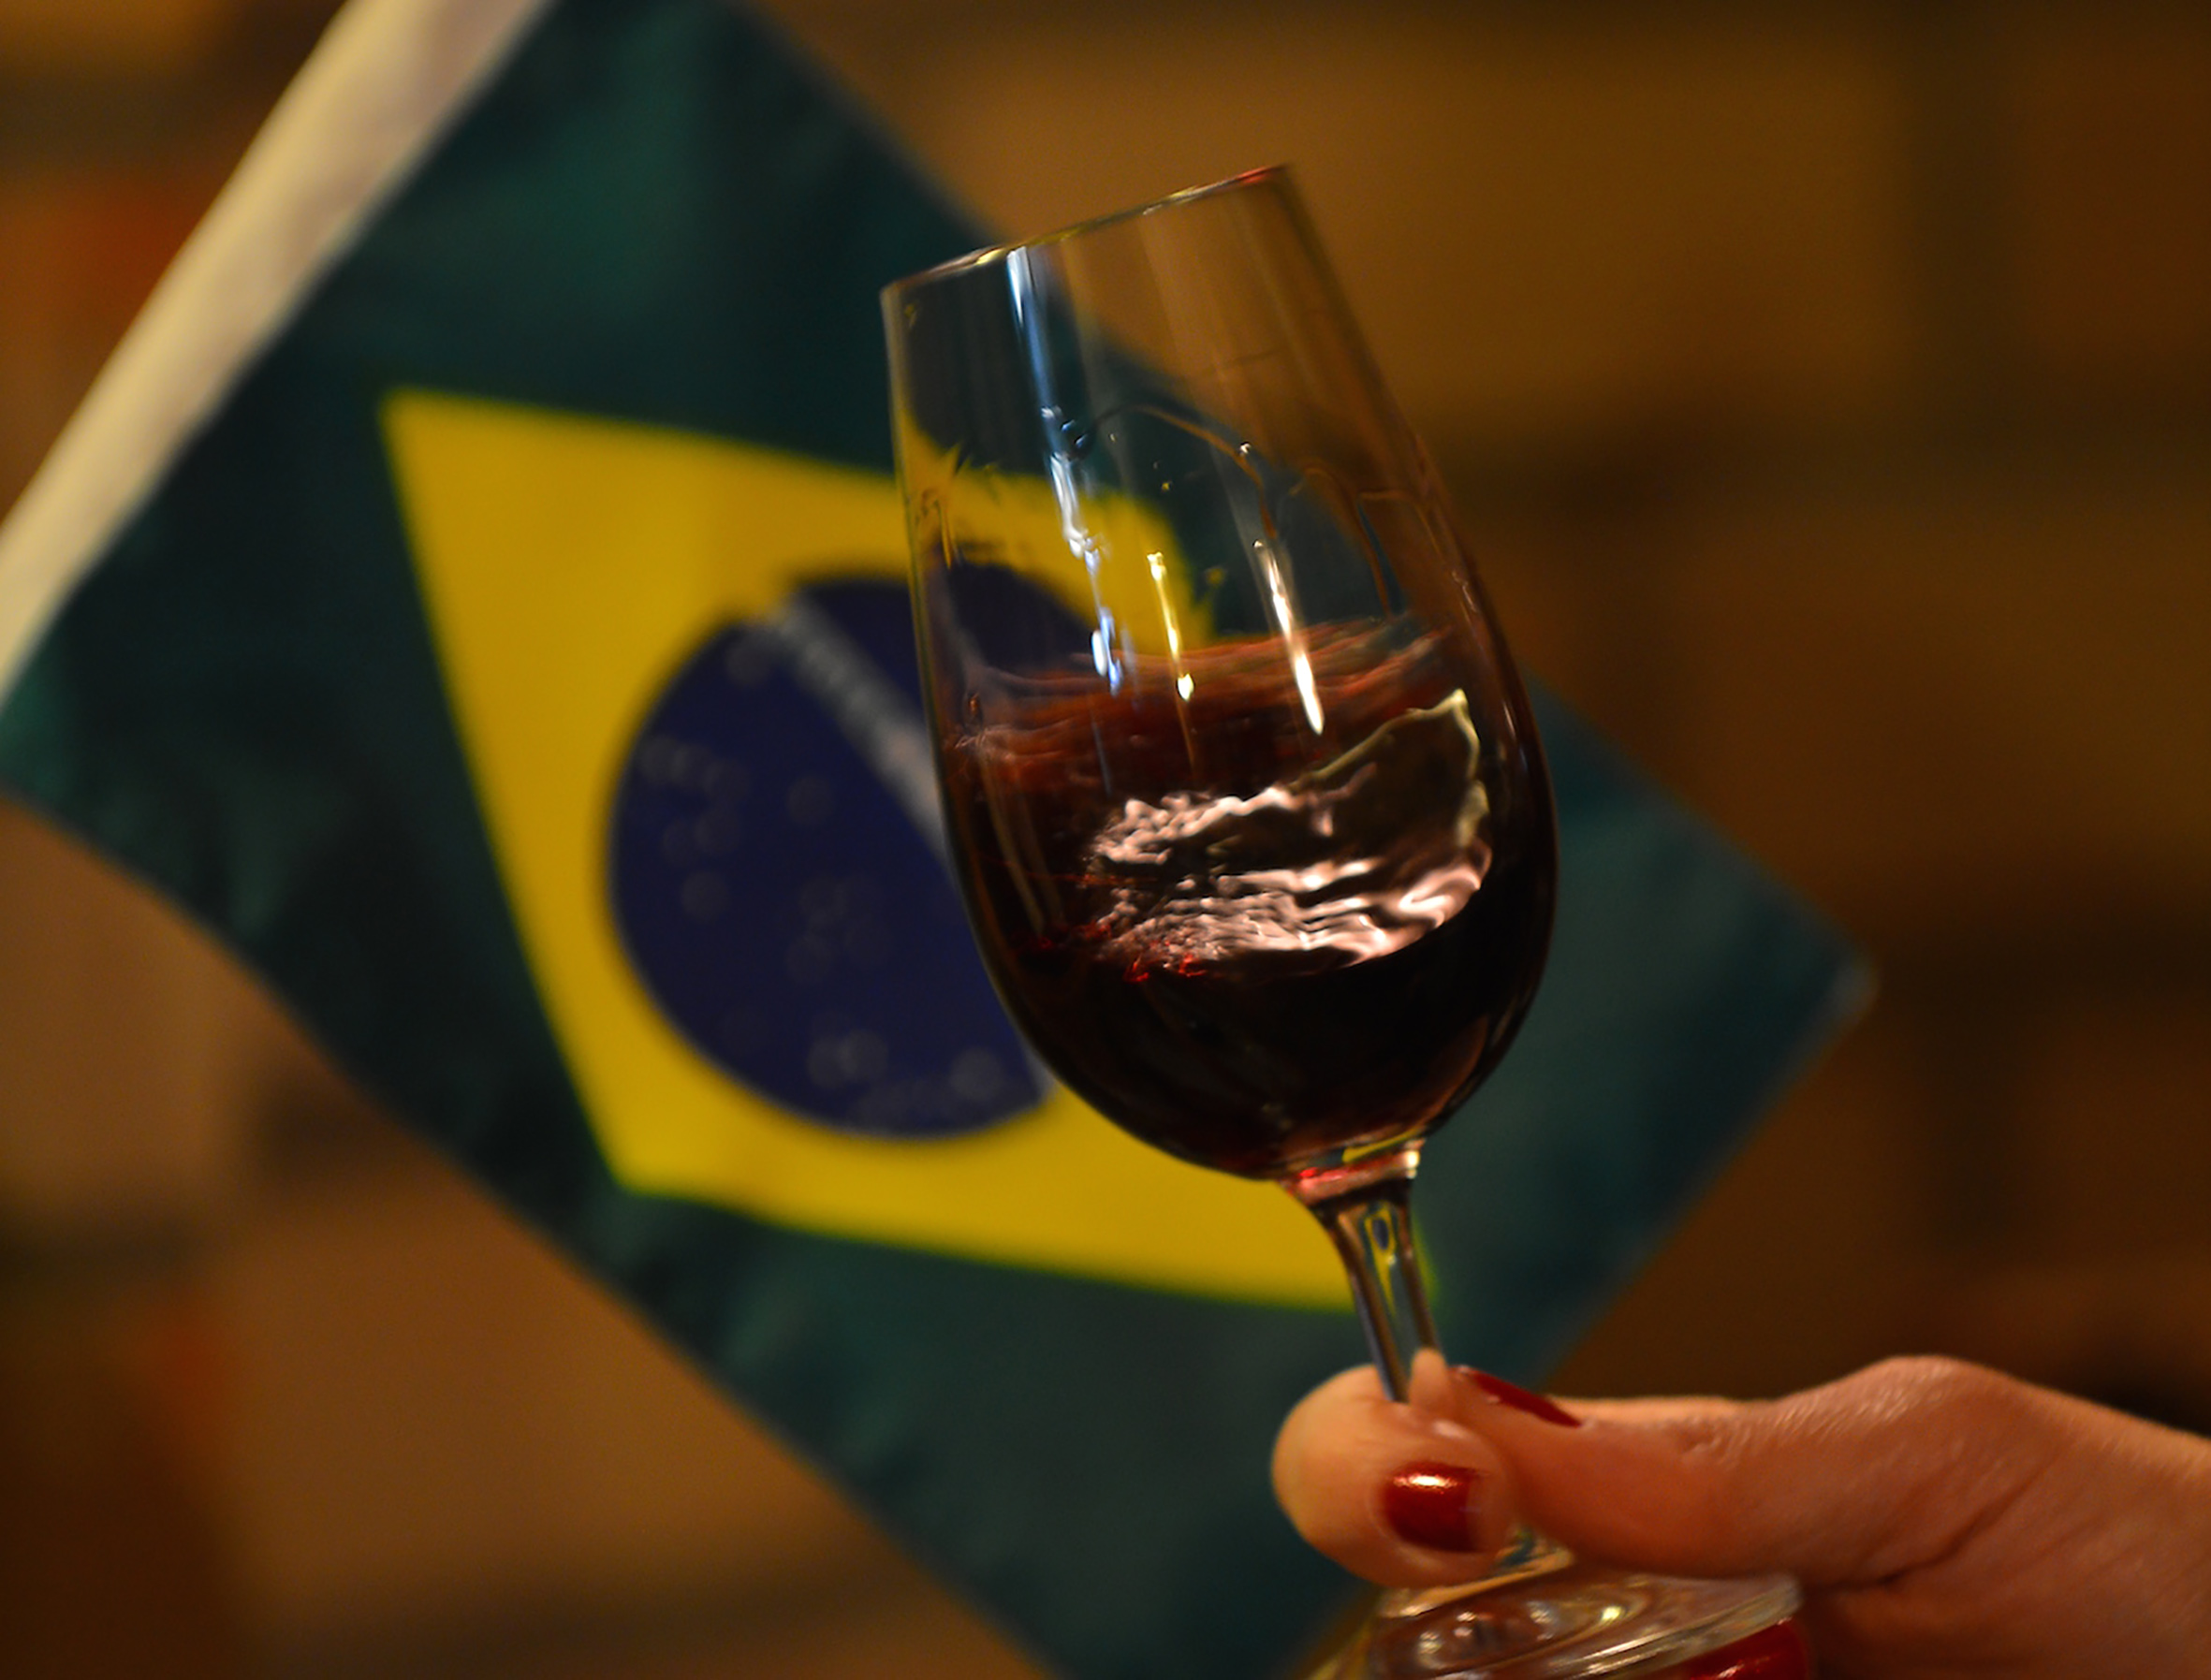 Vinho Tinto Ravanello Cabernet Sauvignon / Merlot Safra 2019 750 ml -  Vinhos & Sabores